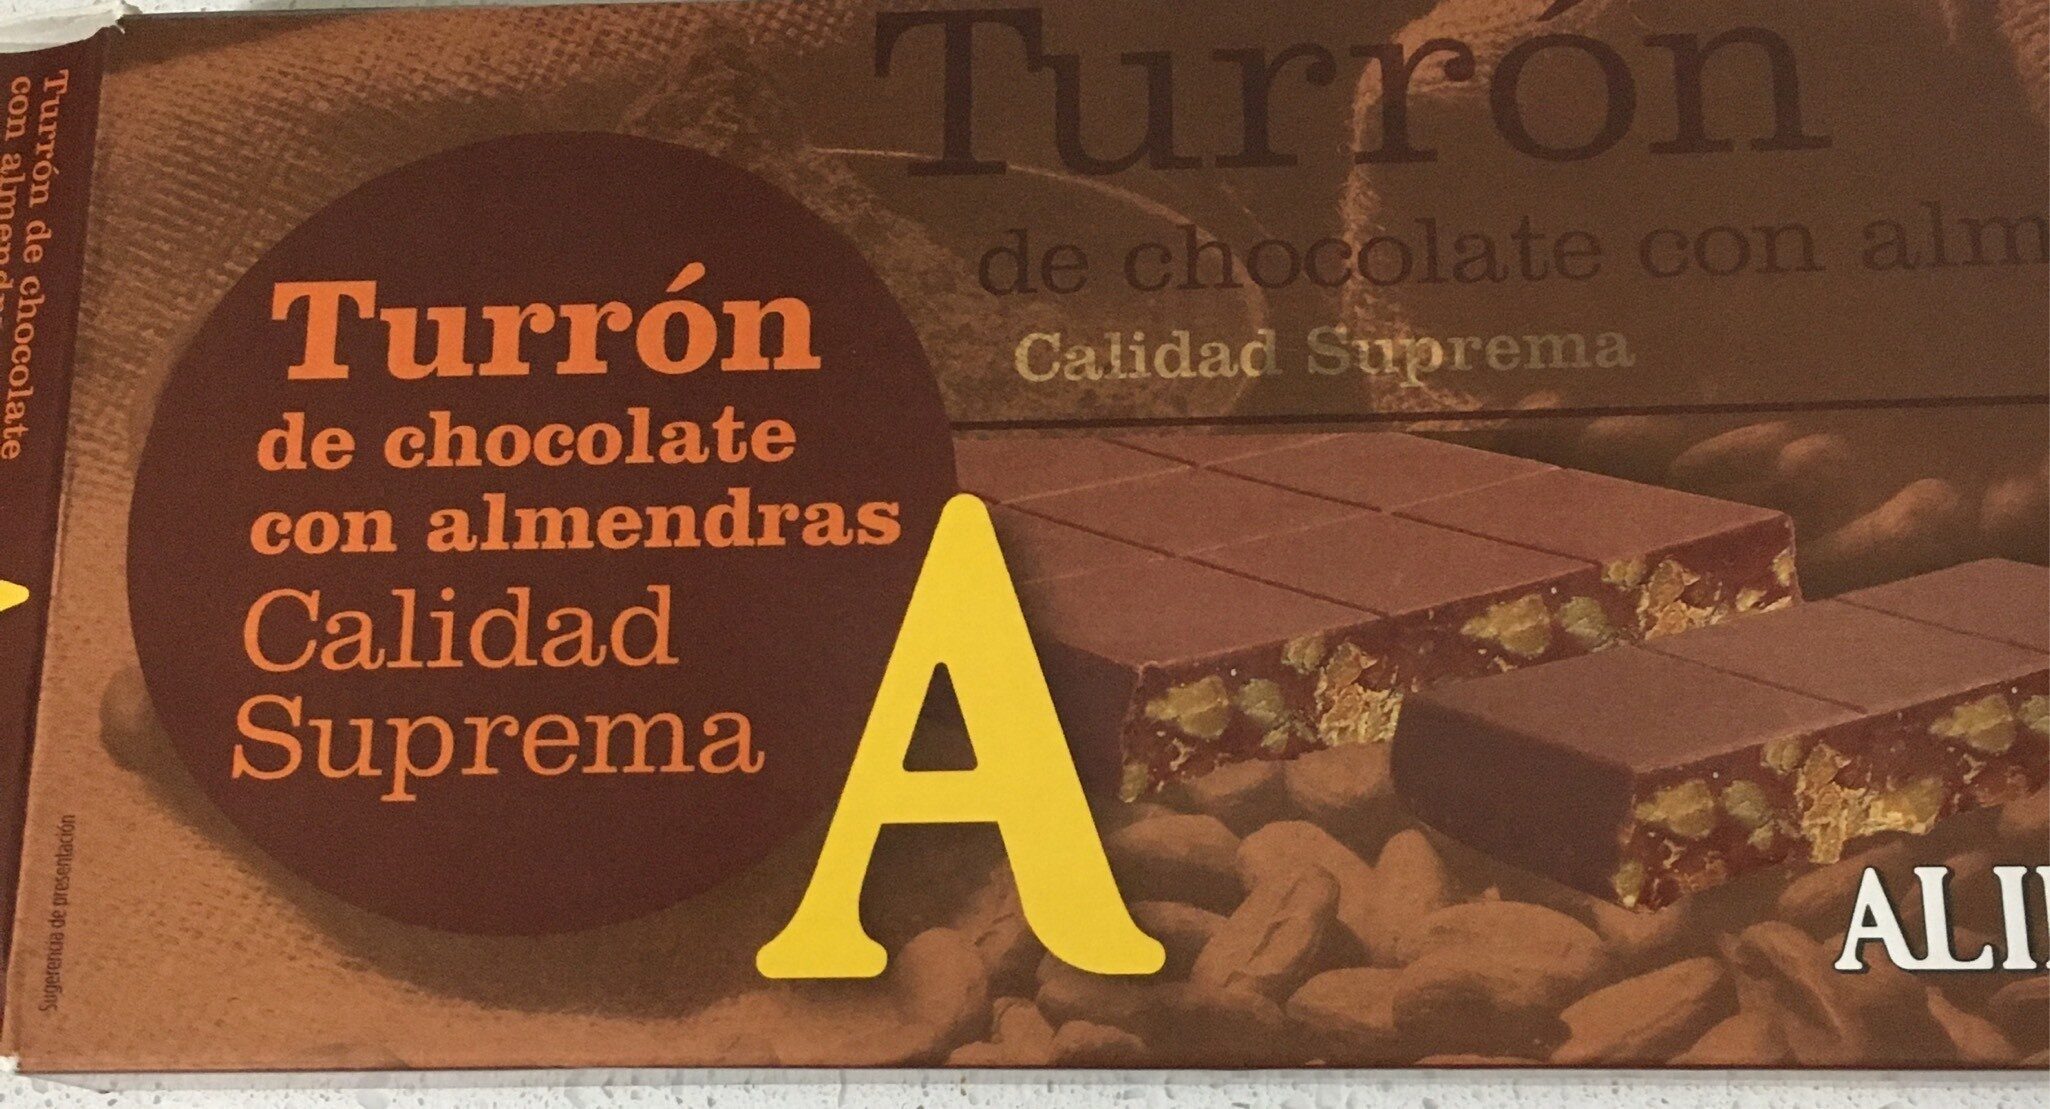 Turrón de chocolate con almendras - Product - es